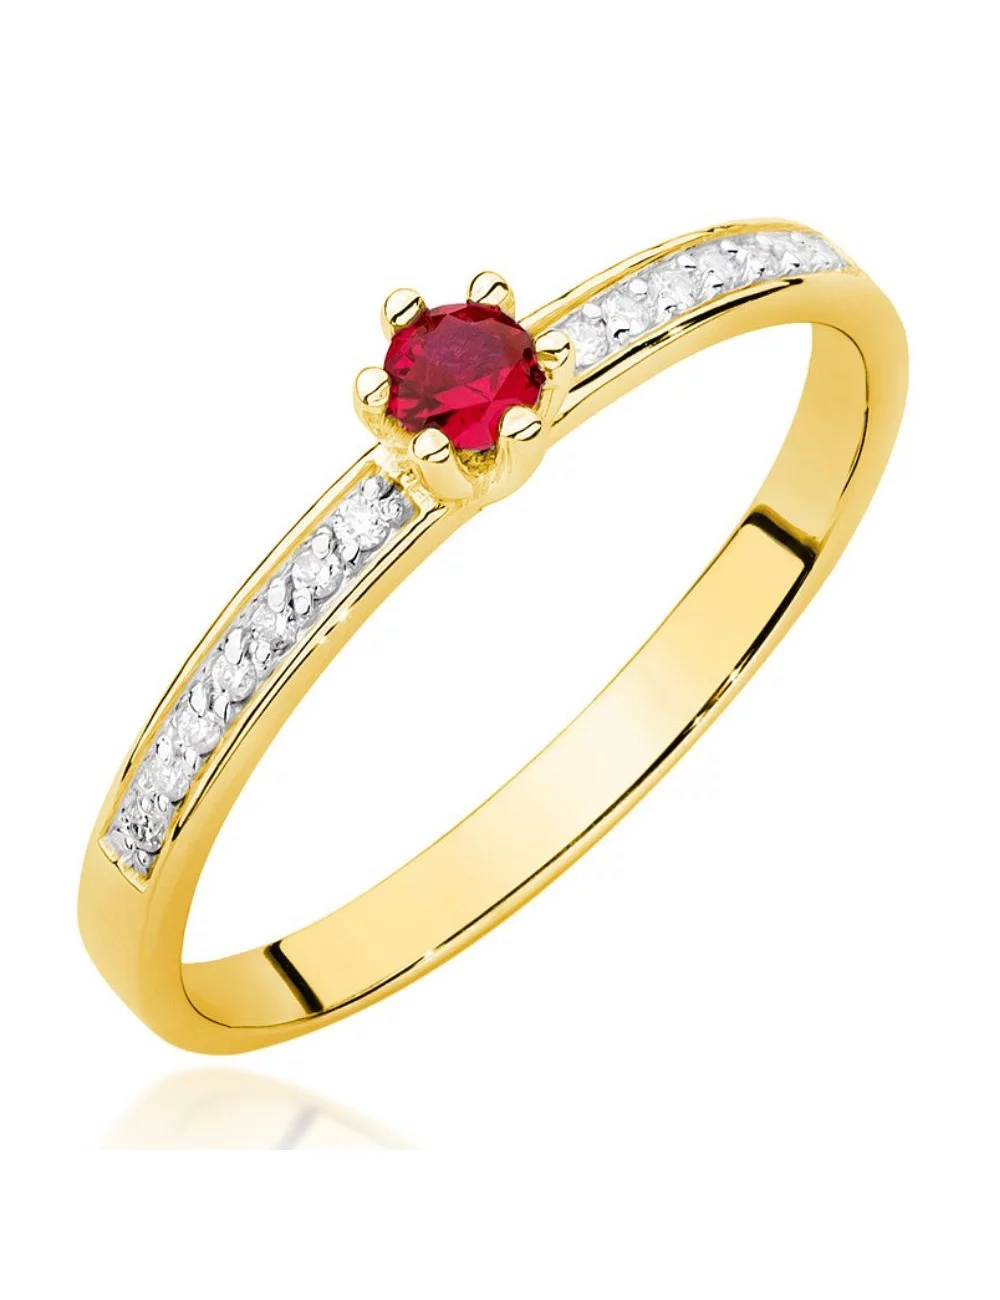 Raudonas brangakmenis - geltono aukso žiedas su rubinu ir deimantais